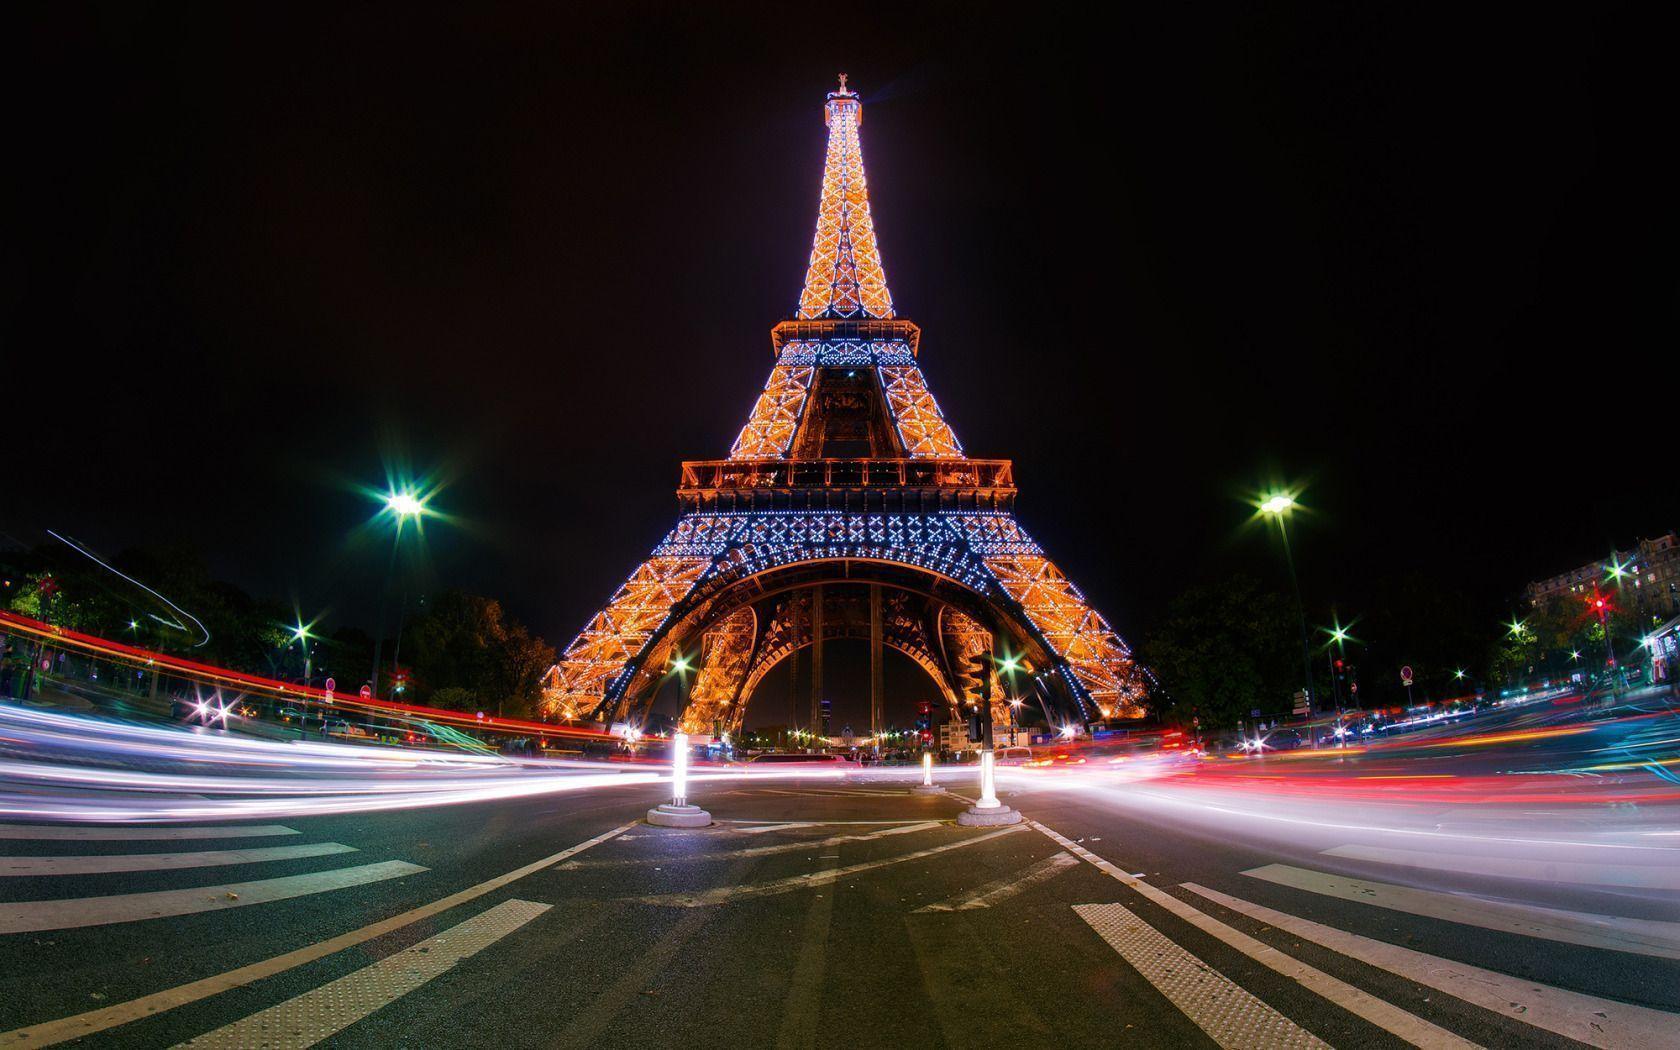 Eiffel Tower, Paris, France widescreen wallpaper. Wide